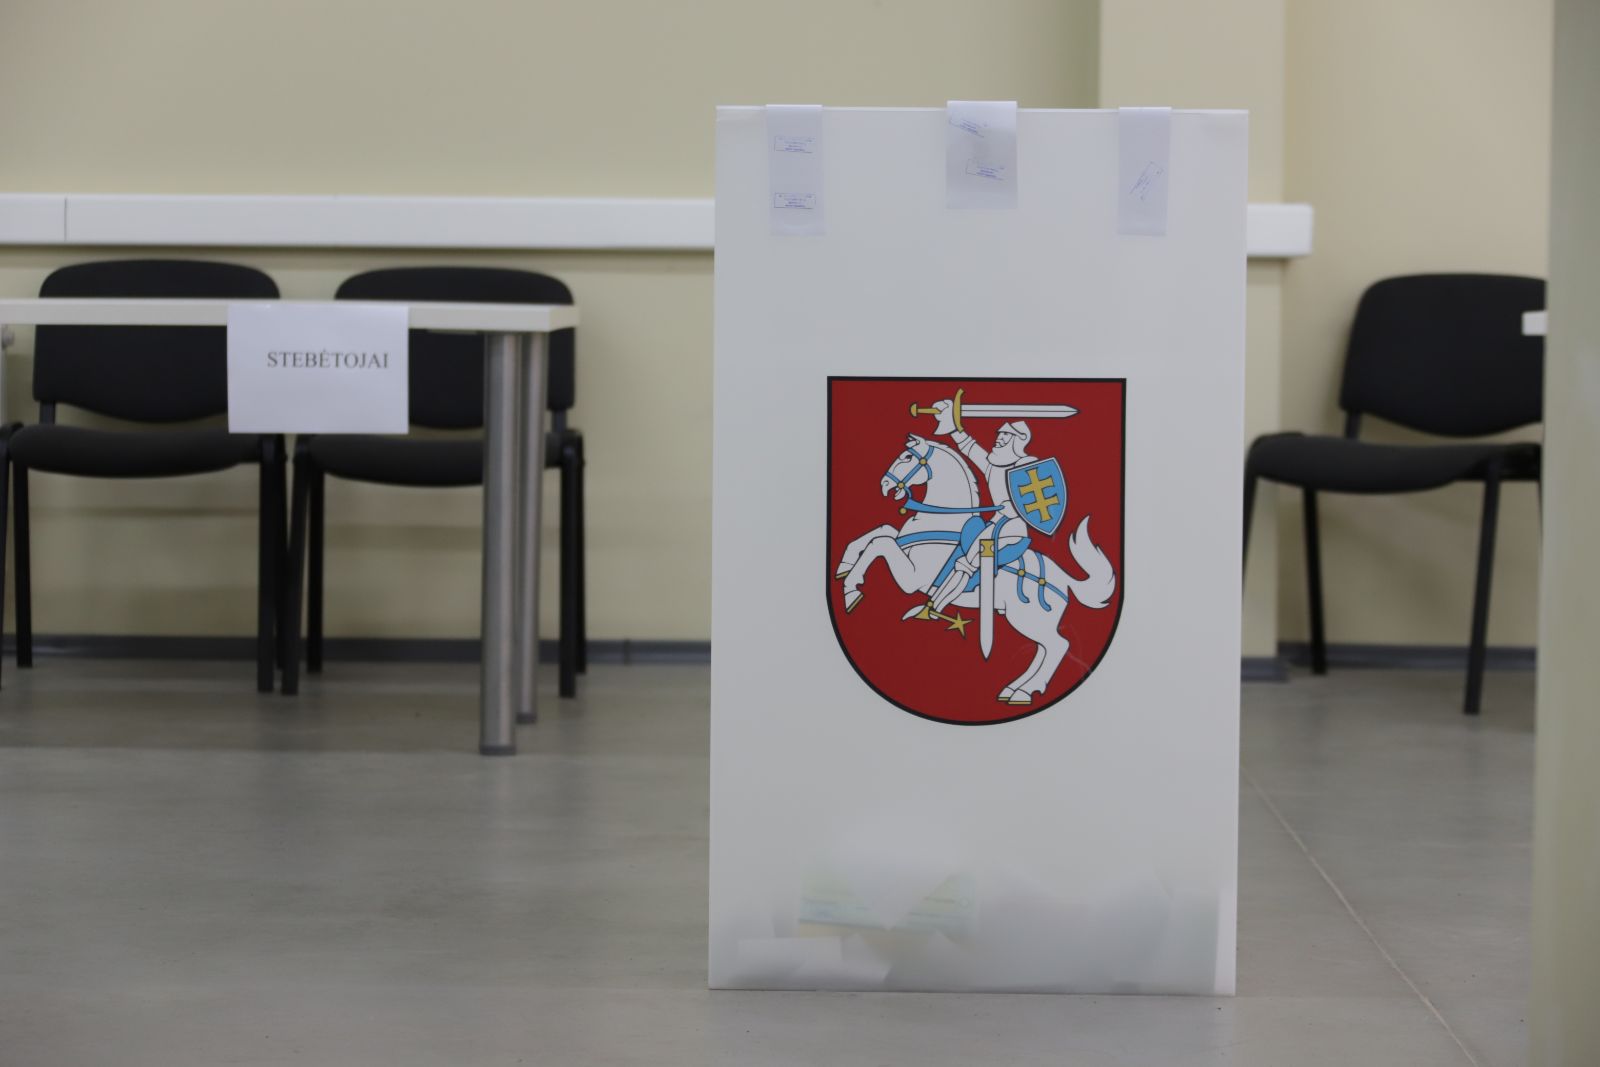 Didelių rinkimų tvarkos pažeidimų per šiuos Seimo rinkimus nefiksuota, iš viso policija pradėjo devynis ikiteisminius tyrimus, pranešė generalinis policijos komisaras.